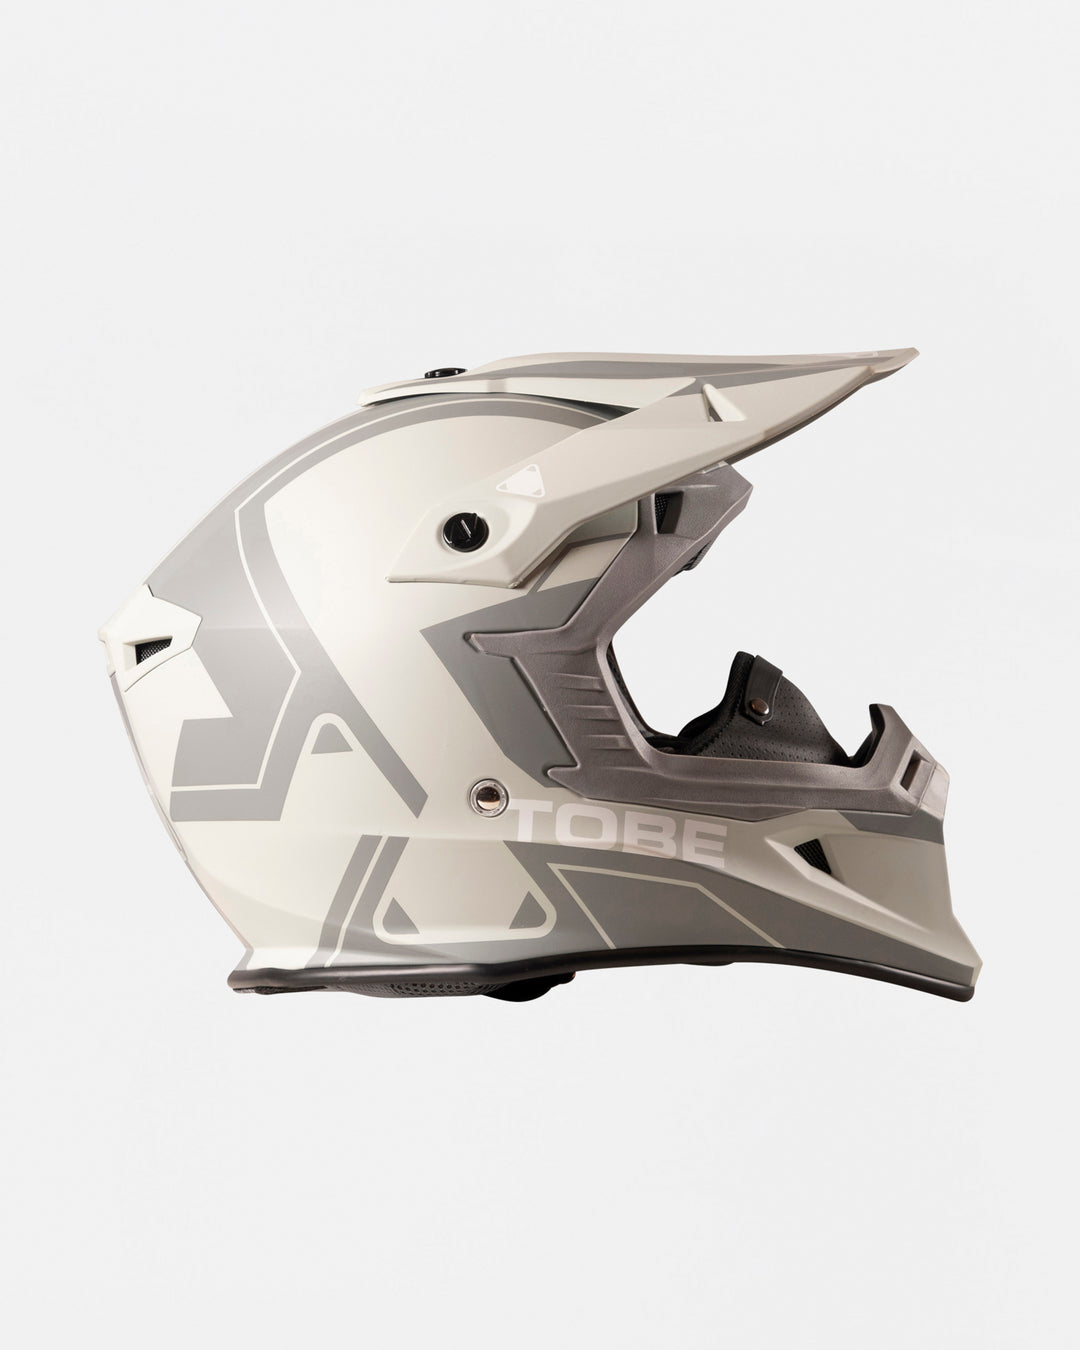 TOBE Mantle Helmet -